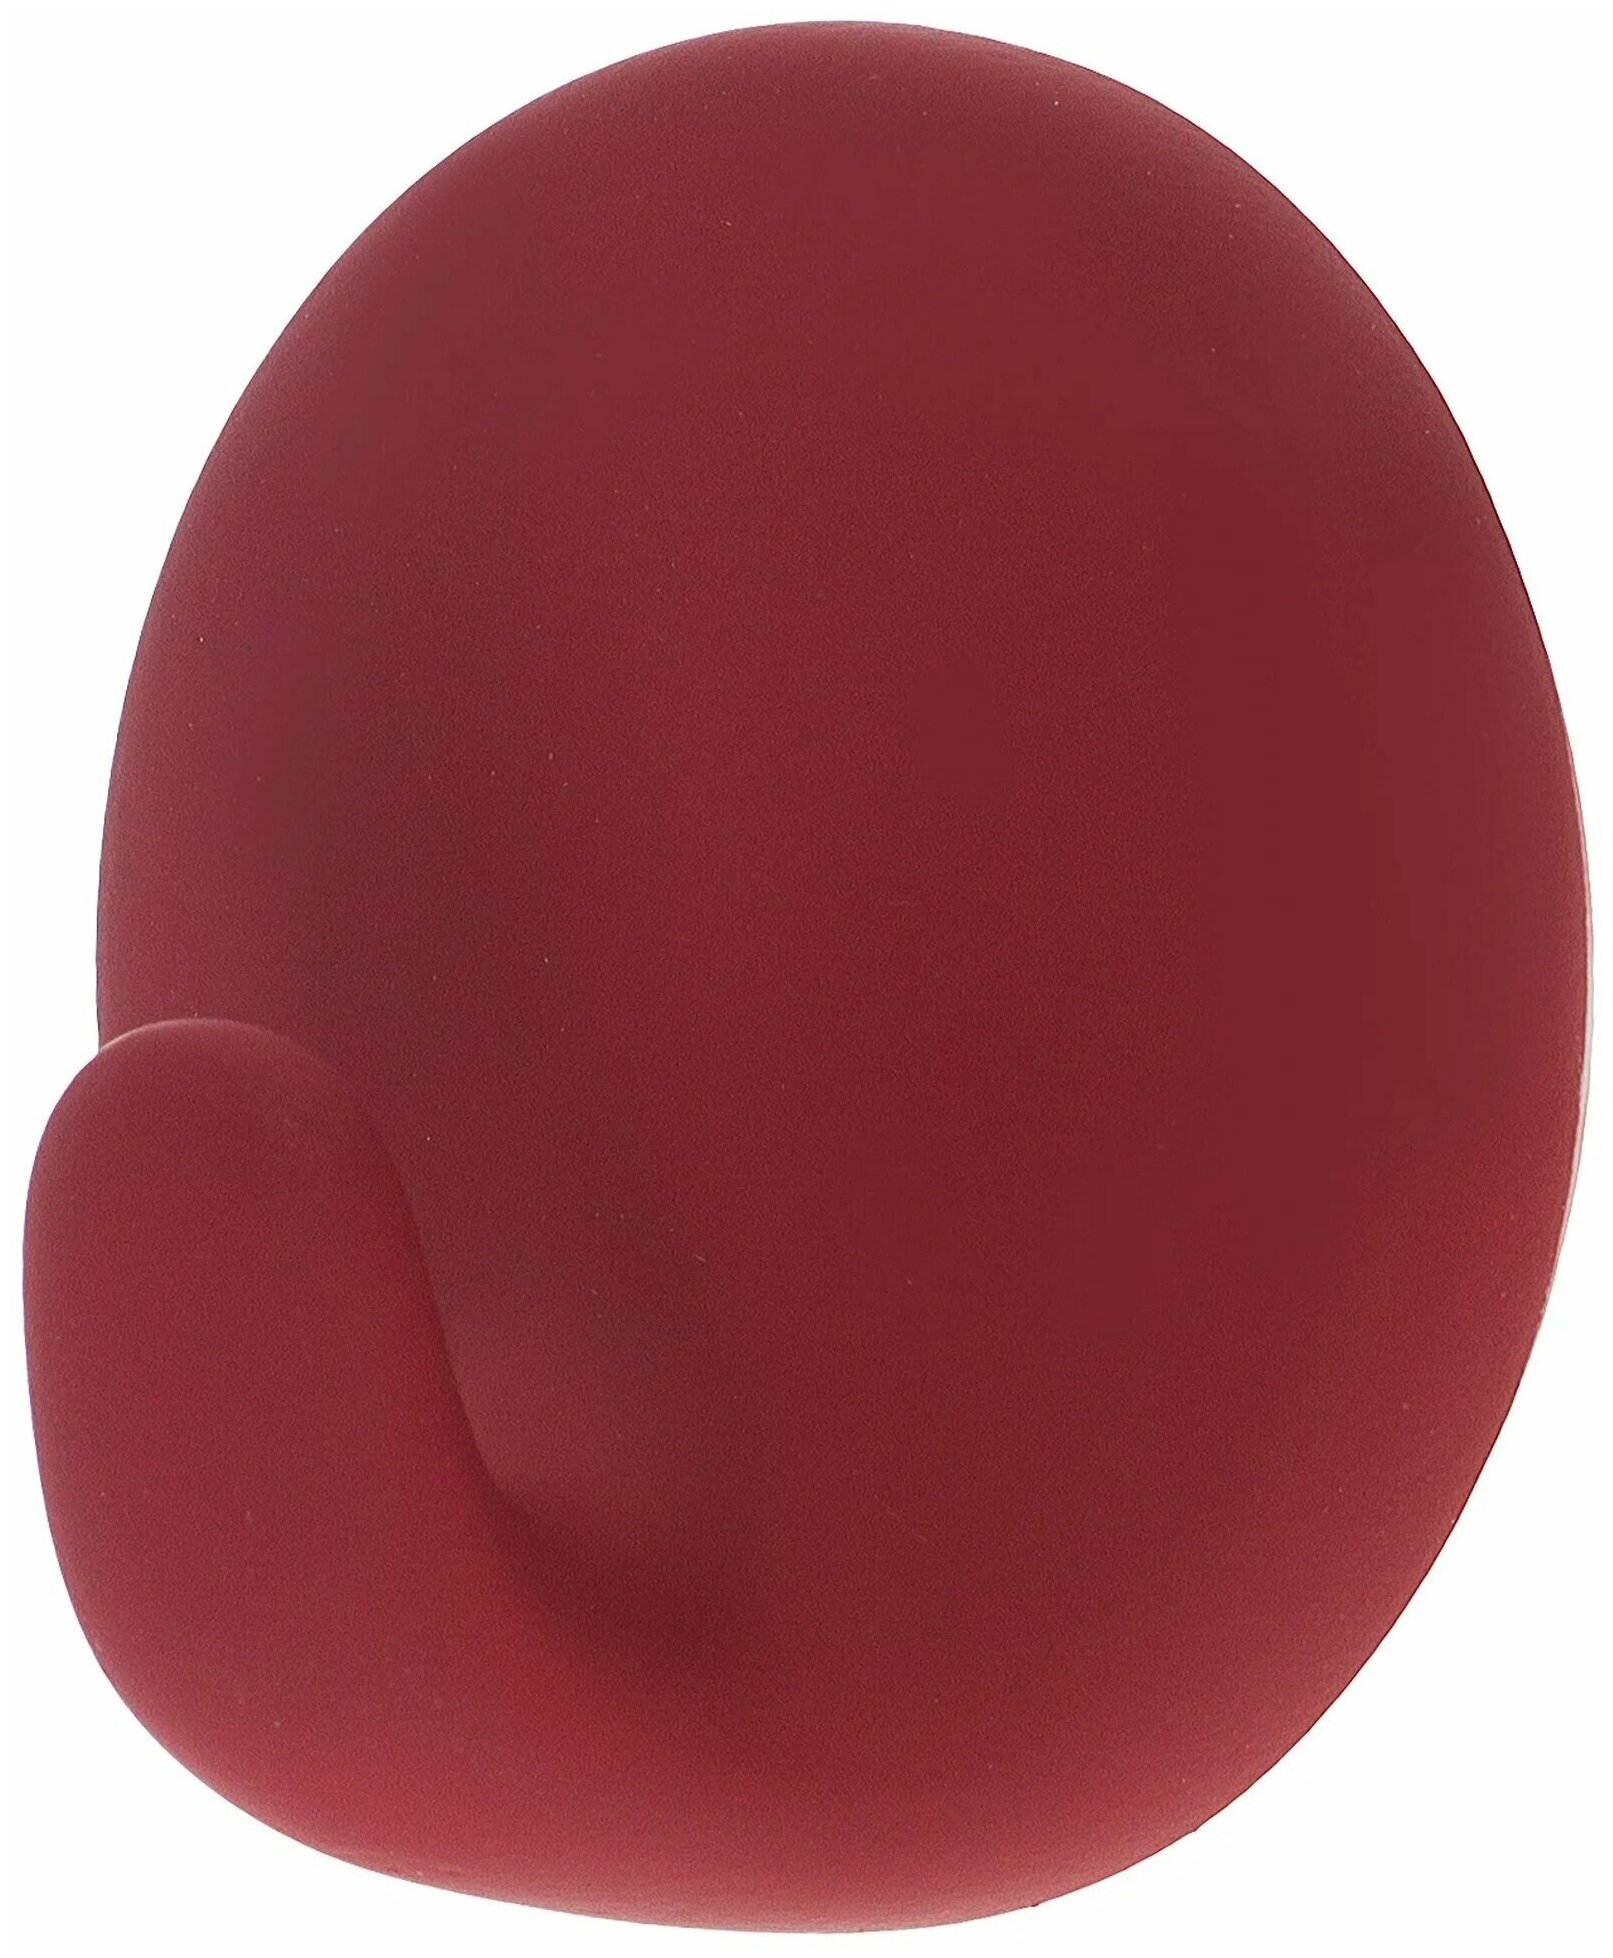 Самоклеющийся крючок диаметр 5.7 см пластик цвет пунш поможет поддерживать идеальный порядок на вашей кухне или в ванной